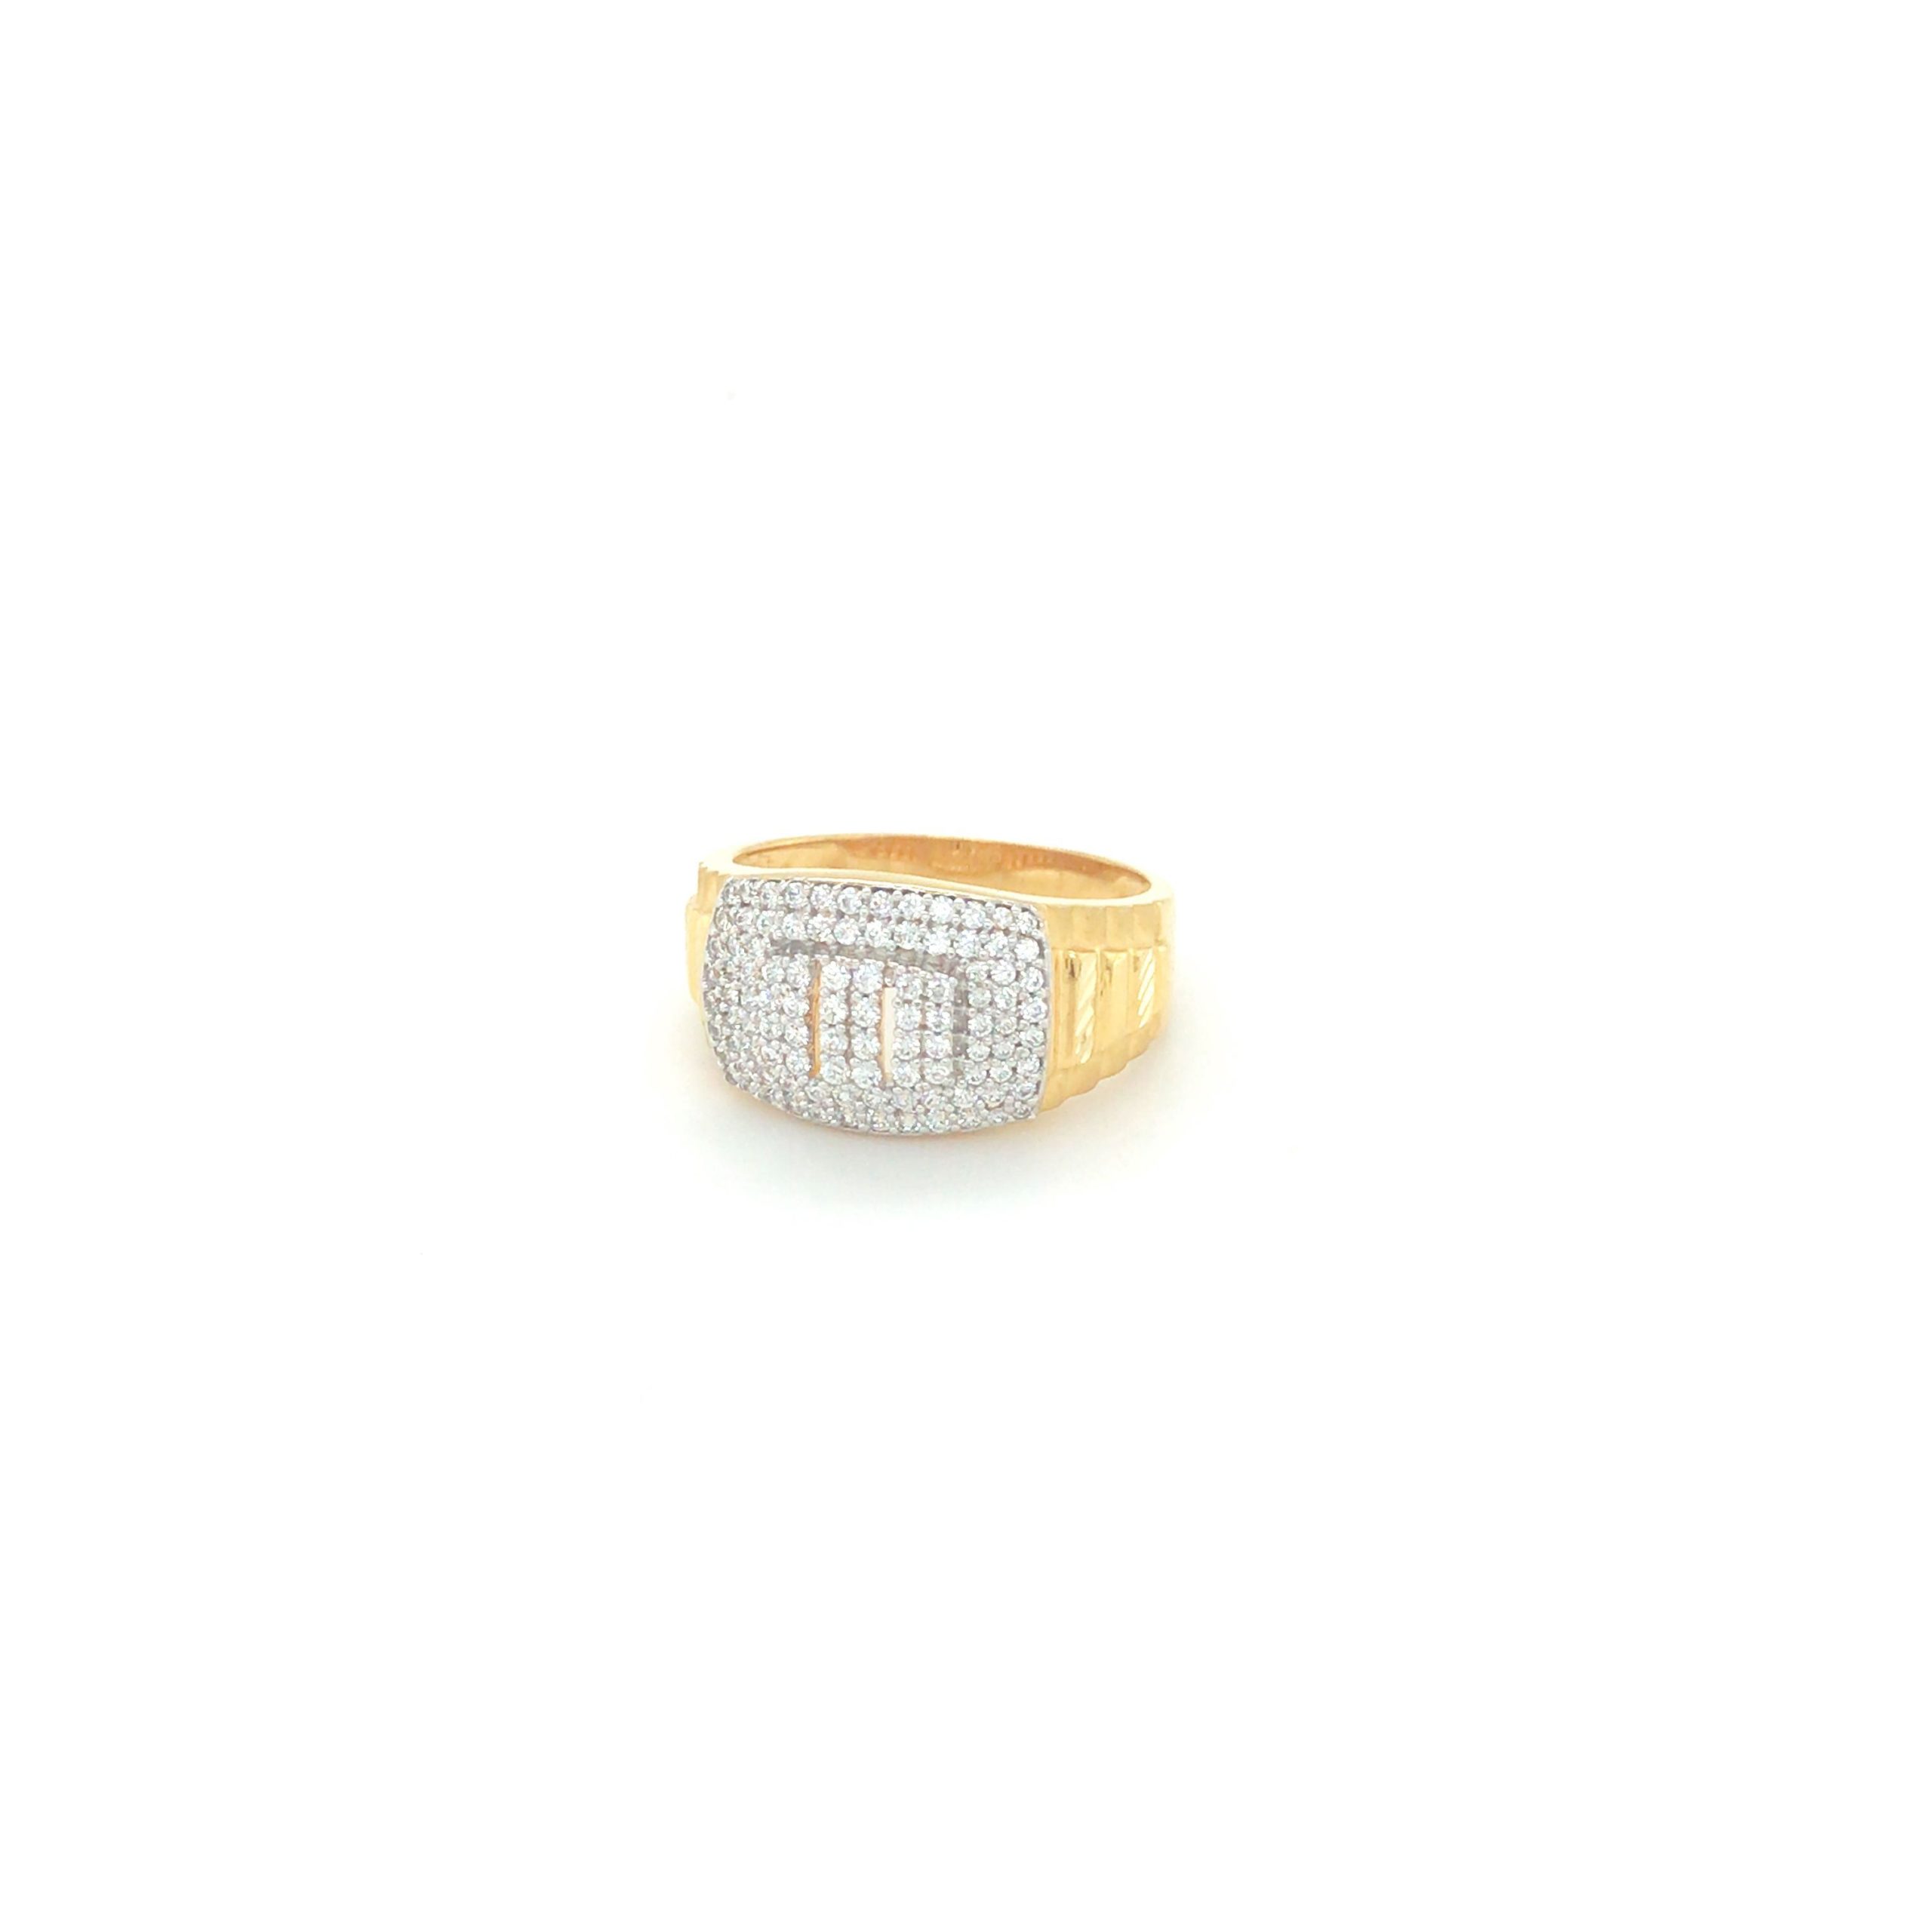 Ladies Fashion Ring in 22K Yellow Gold - RG-385